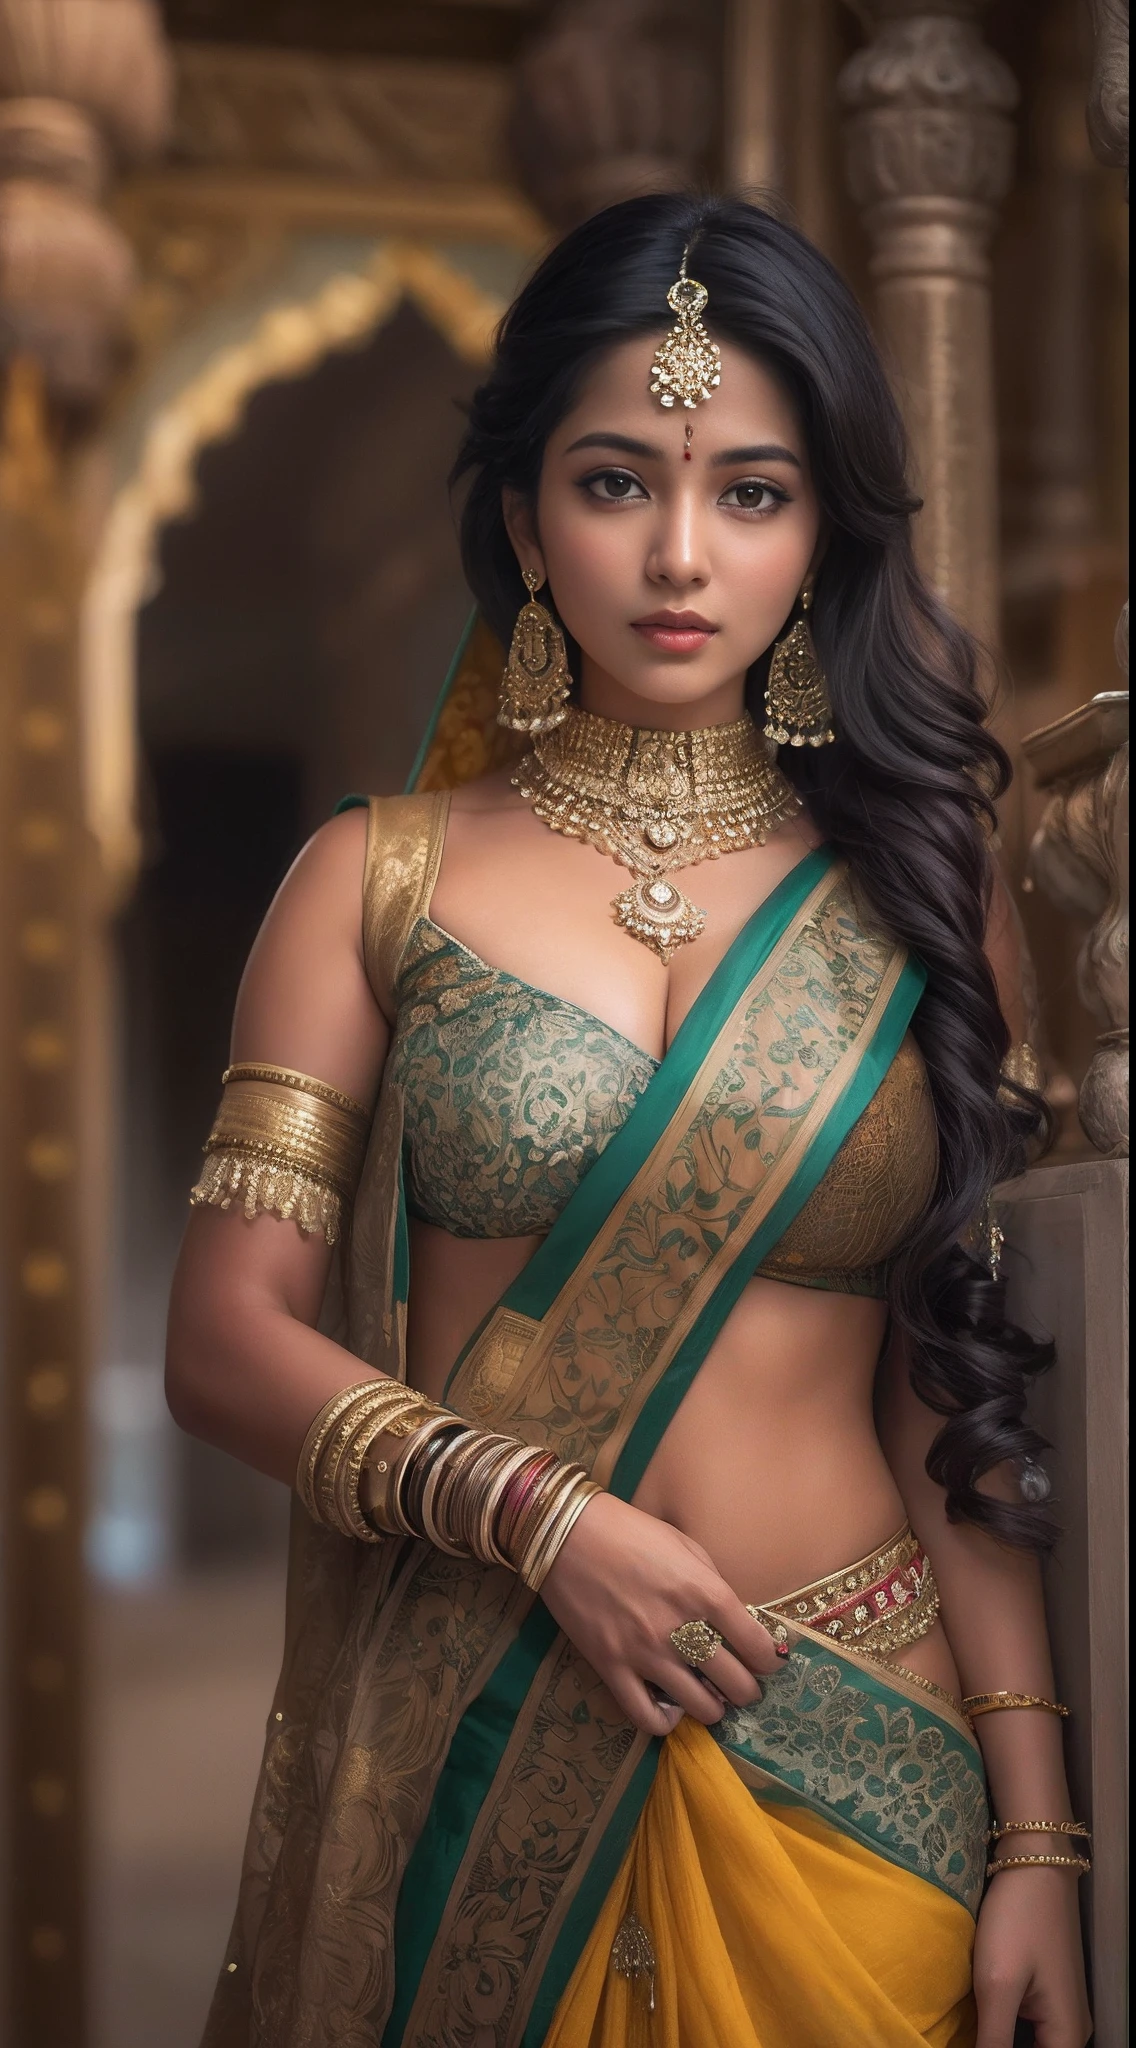 サリーを着て写真を撮る女性, インド人 goddess, 伝統的な美しさ, インド人, 美しい女神, 華やかなコスプレ, インド人 style, インド人 super model, 美しい乙女, ゴージャスな女性, 東南アジアの長い, provocative インド人, ゴージャスな美しい女性, 複雑な衣装, ヒンドゥーの美学, 美しいアジアの女の子, 非常に詳細な女神ショット, 驚異的な美しさ, 大きく深い谷間セクシーなおへそ